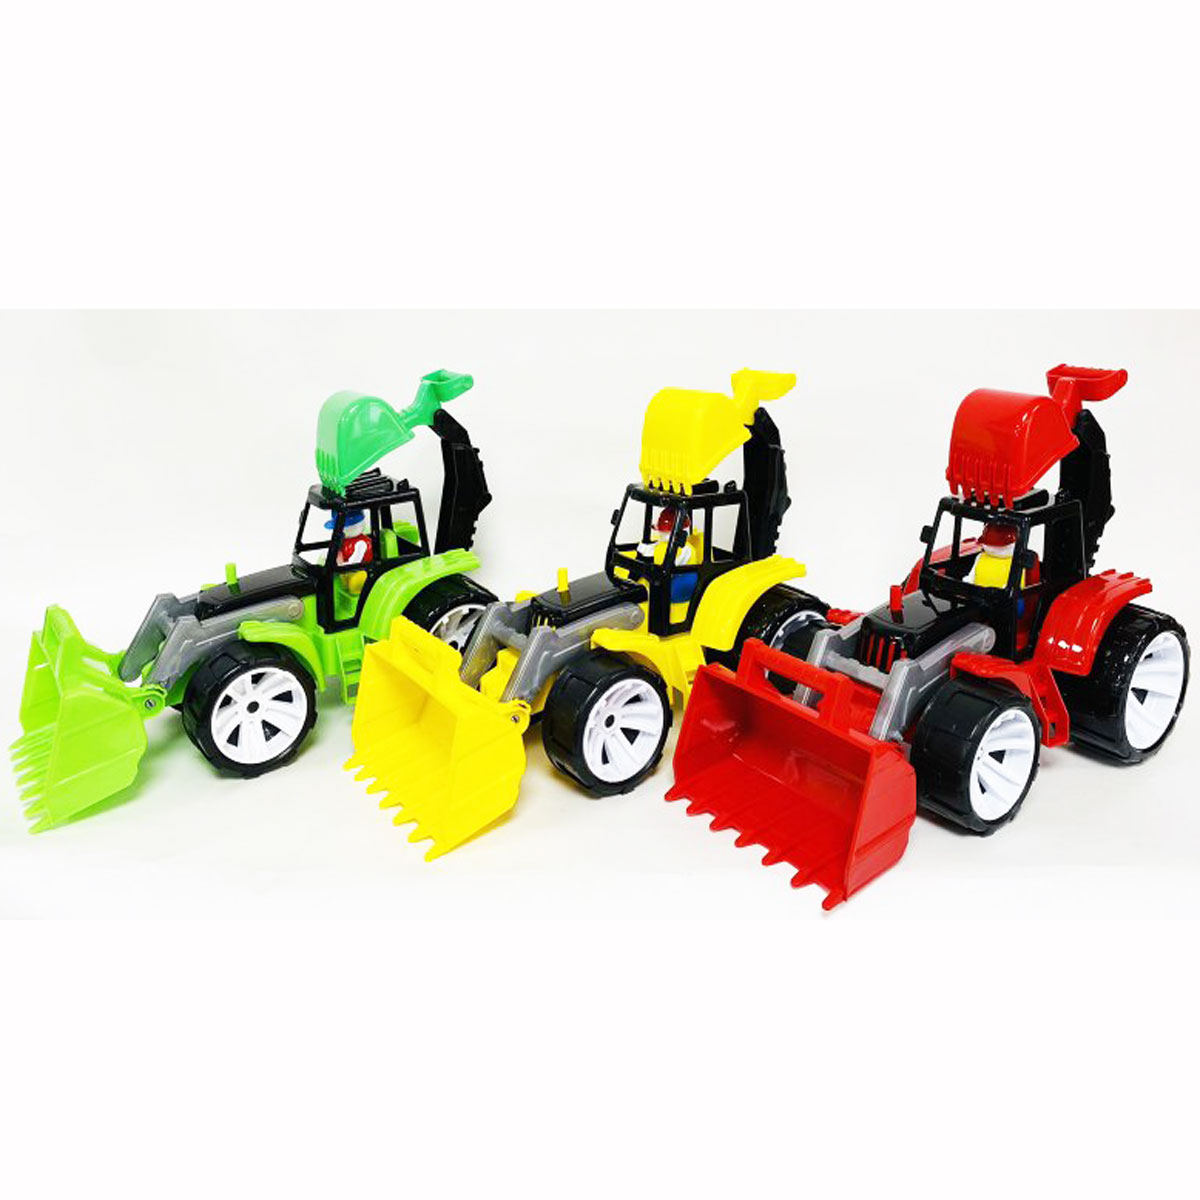 Іграшковий трактор із двома ківшами